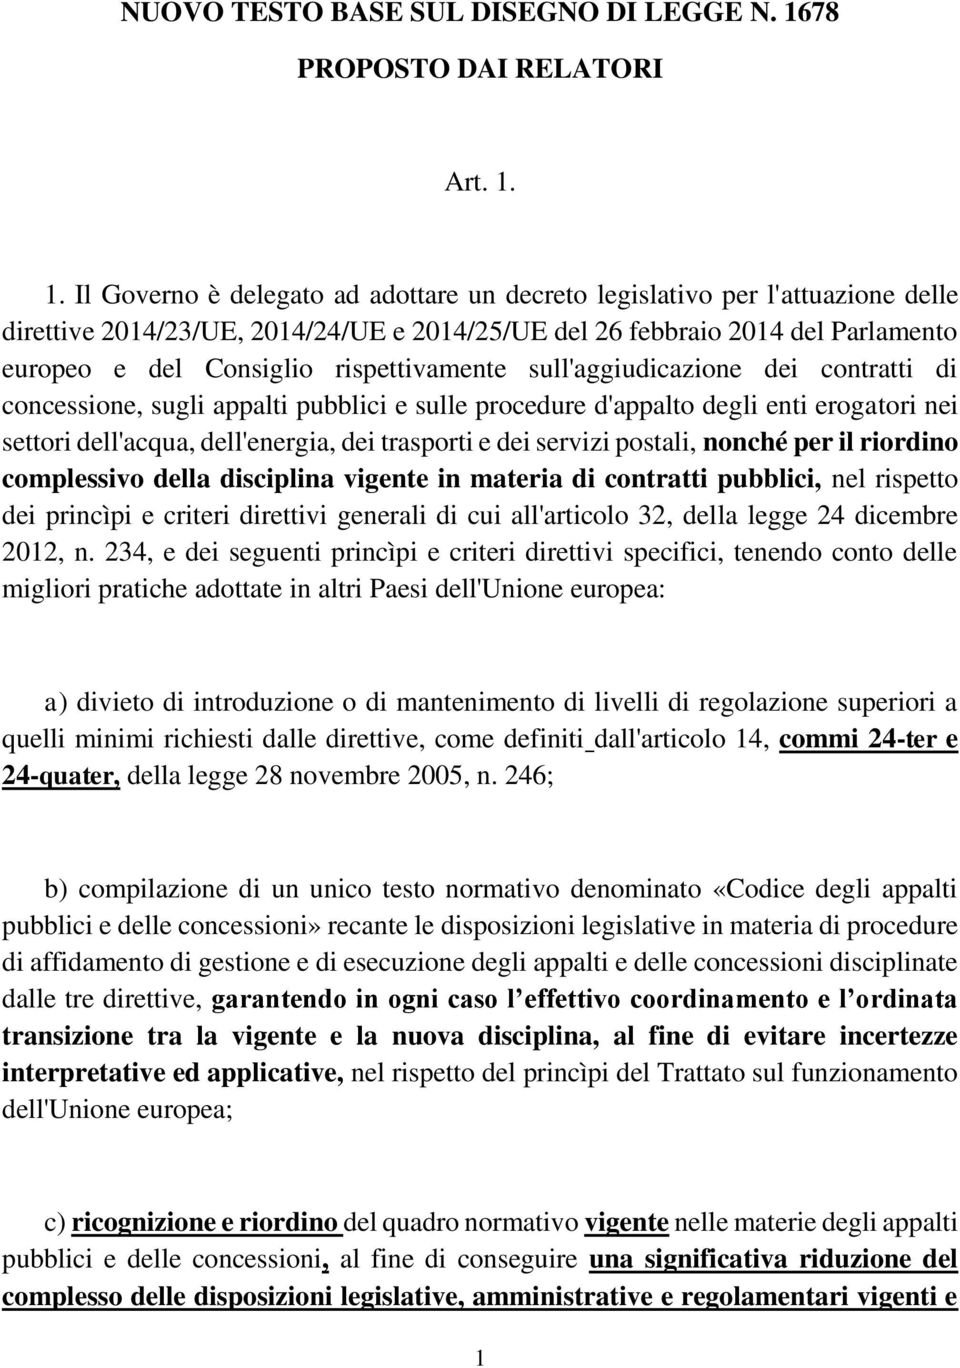 1. Il Governo è delegato ad adottare un decreto legislativo per l'attuazione delle direttive 2014/23/UE, 2014/24/UE e 2014/25/UE del 26 febbraio 2014 del Parlamento europeo e del Consiglio